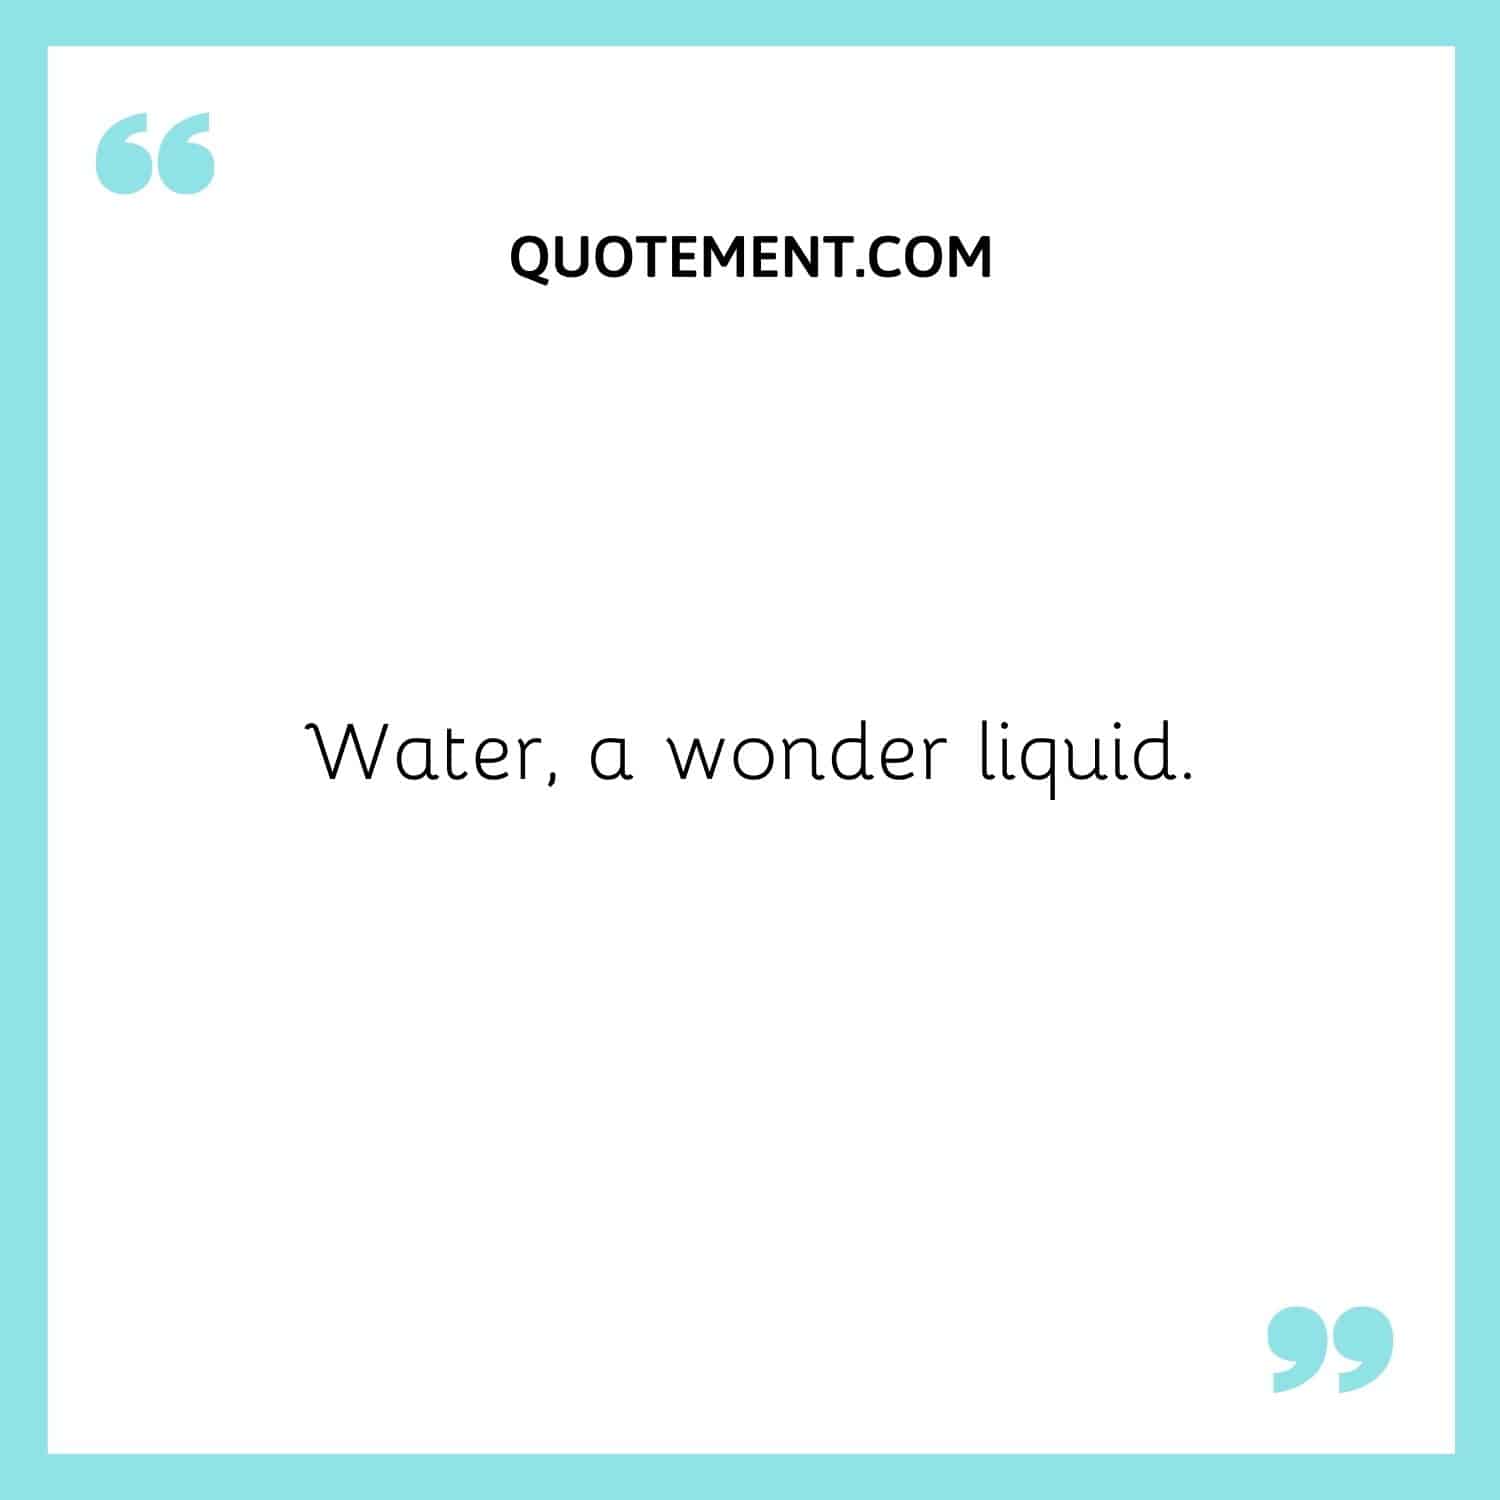 Water, a wonder liquid.